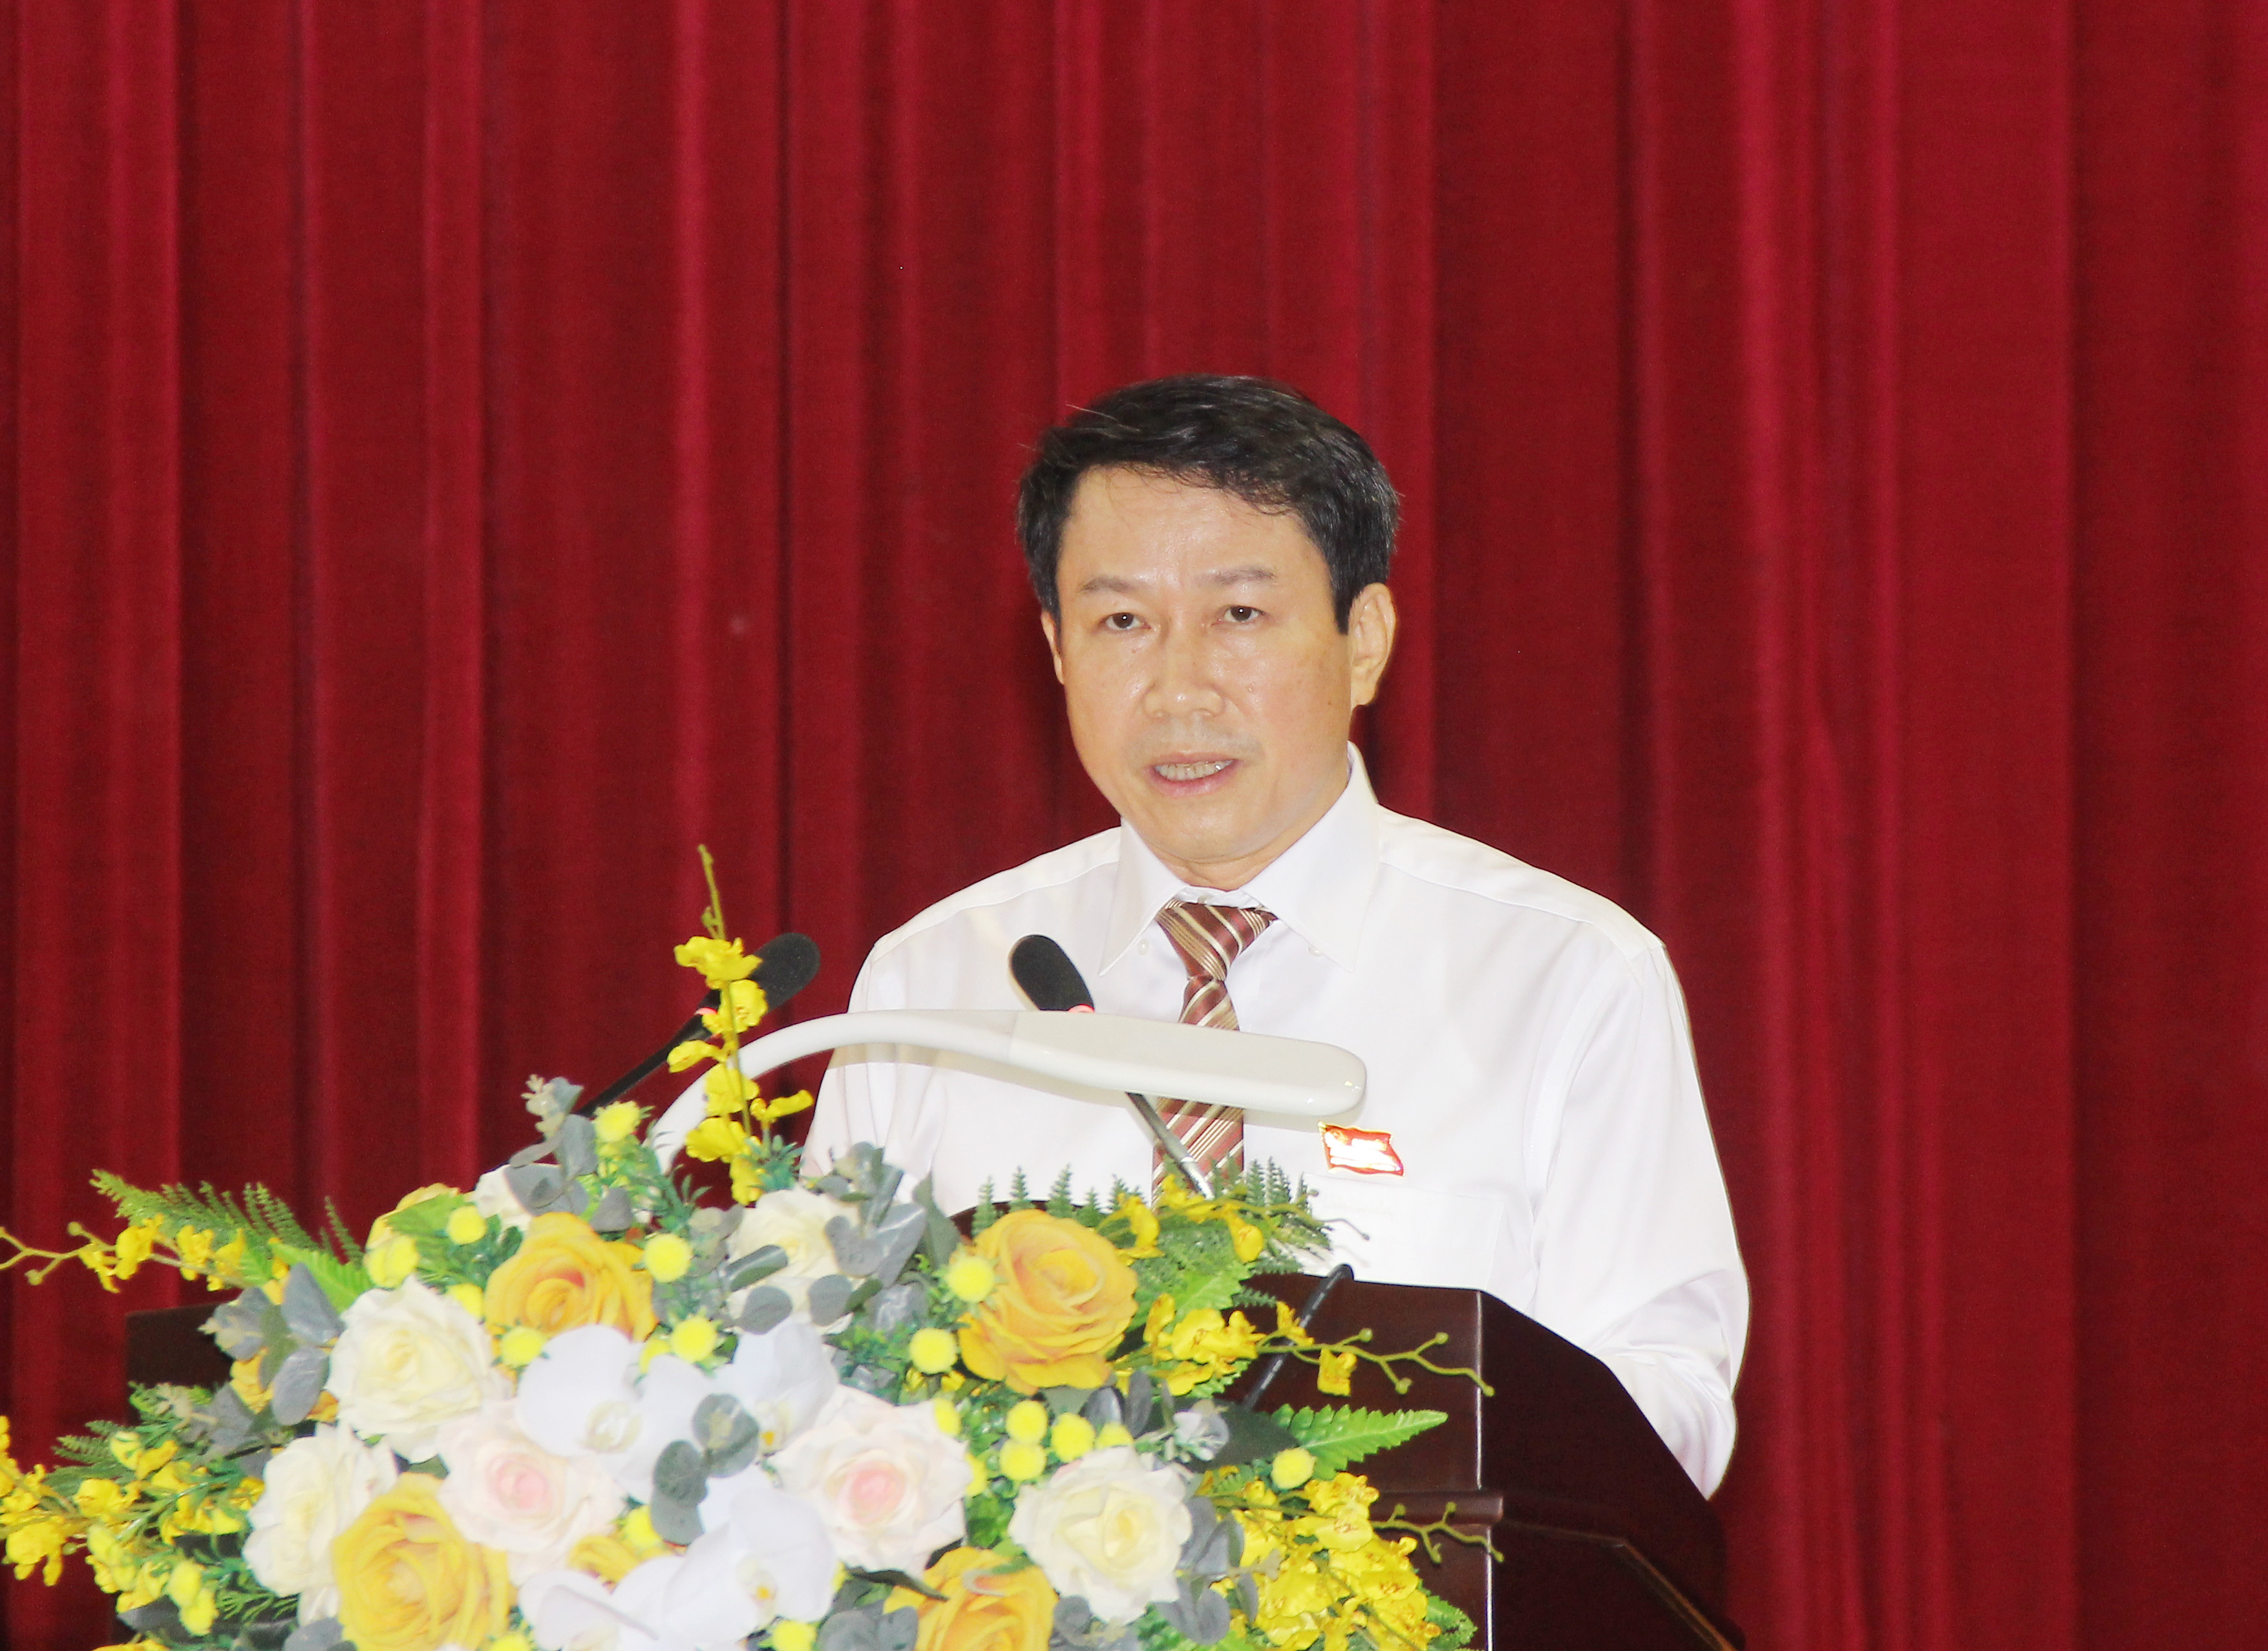 Đồng chí Lê Sỹ Chiến - Phó Chủ tịch UBND thành phố trình bày báo cáo tình hình thực hiện kinh tế - xã hội 6 tháng đấu năm 2021. Ảnh: Mai Hoa